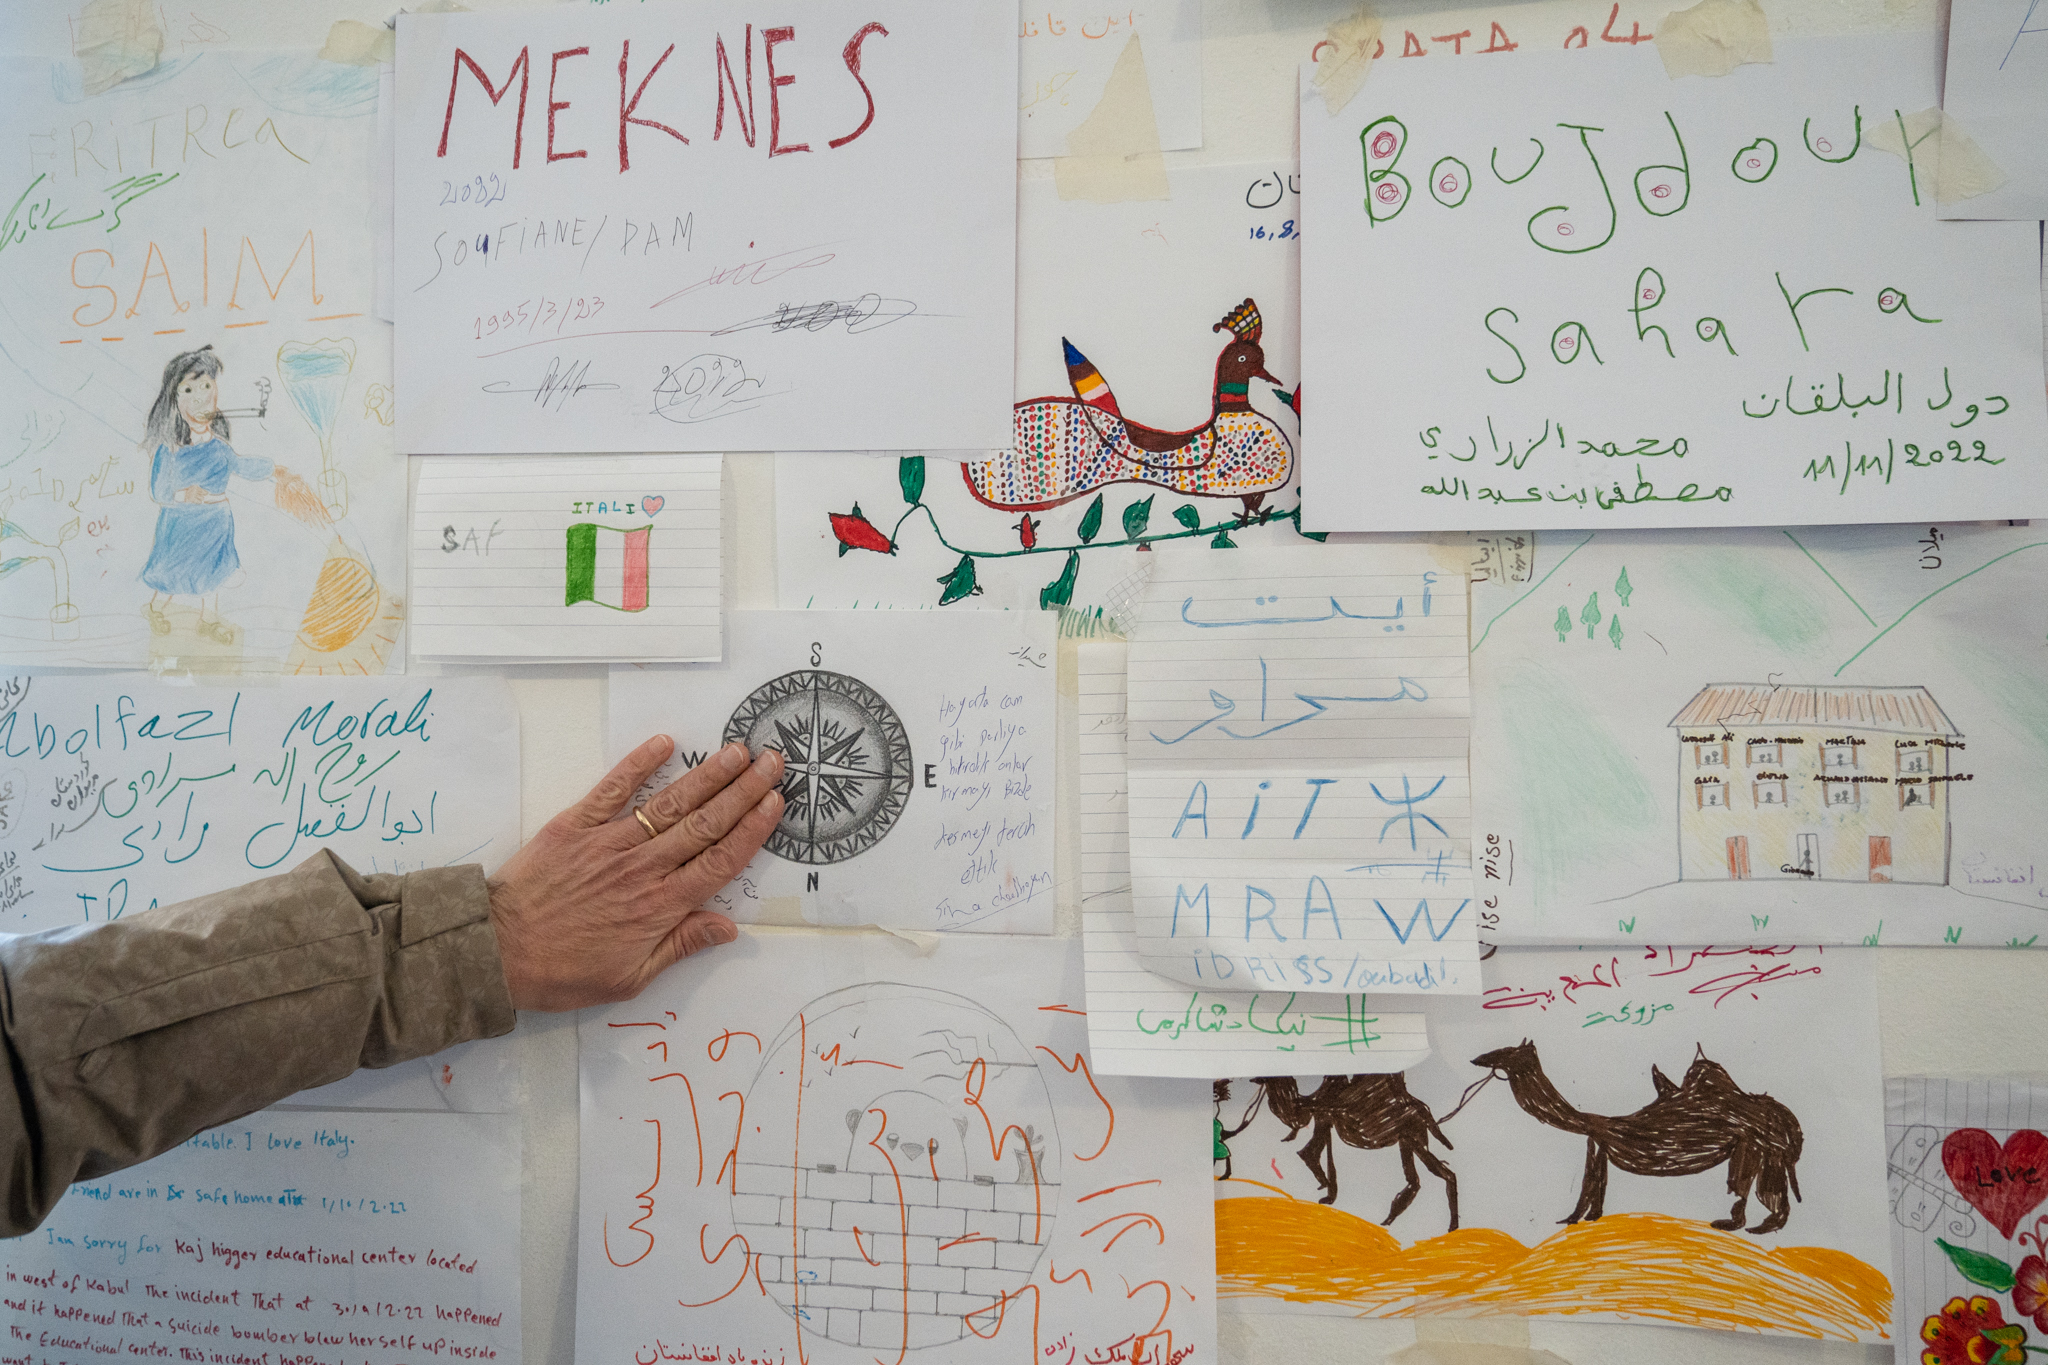 Aan de muur in het rifugio hangen bemoedigende woorden van vluchtelingen aan elkaar.